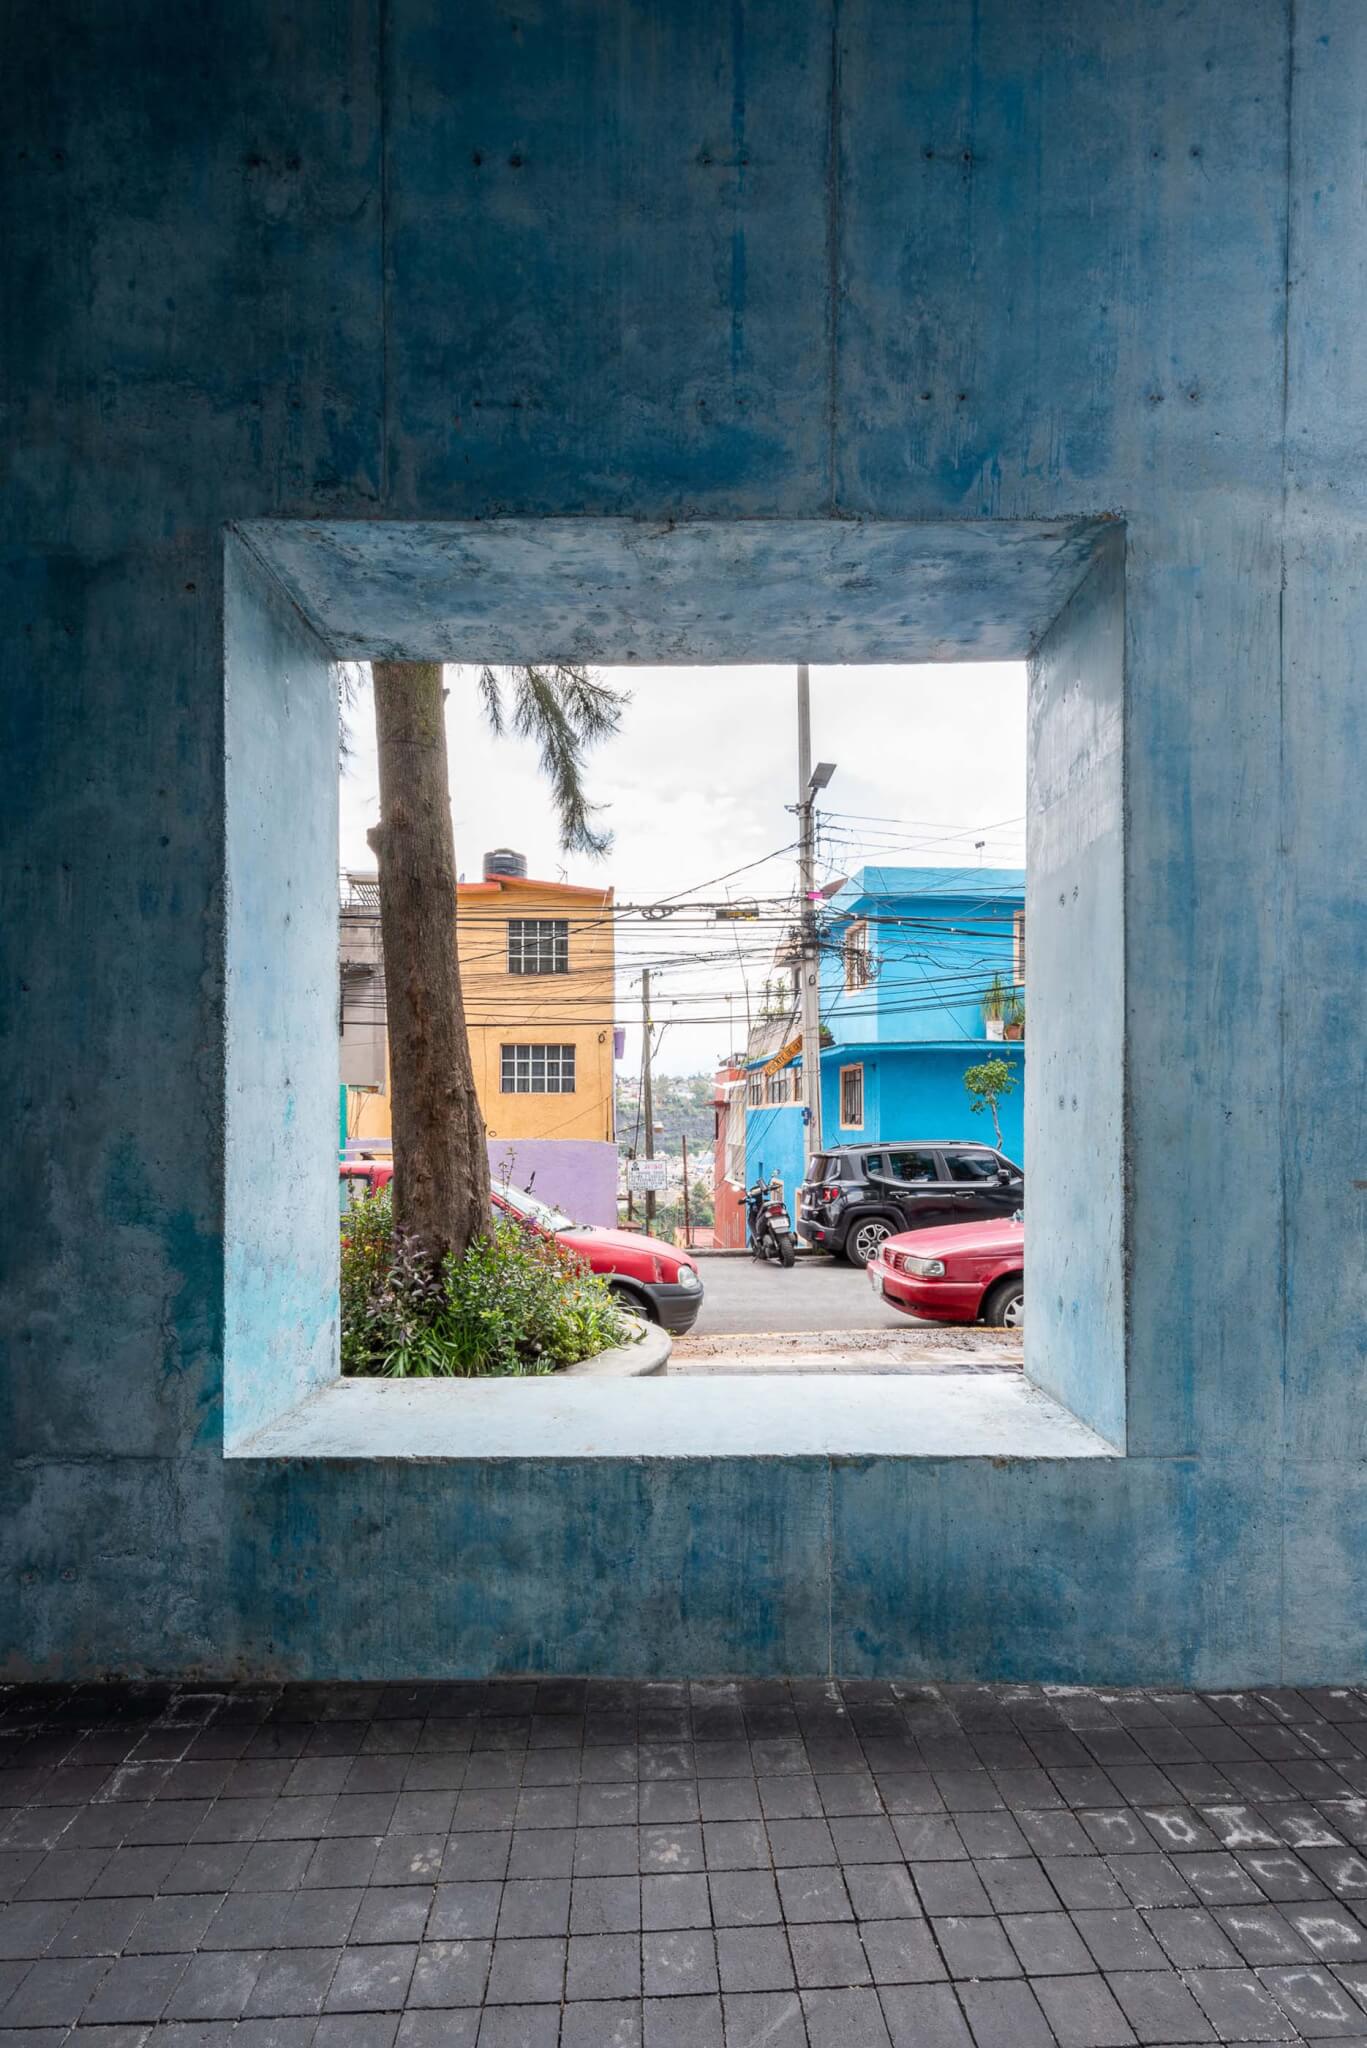 square window with blue concrete interior